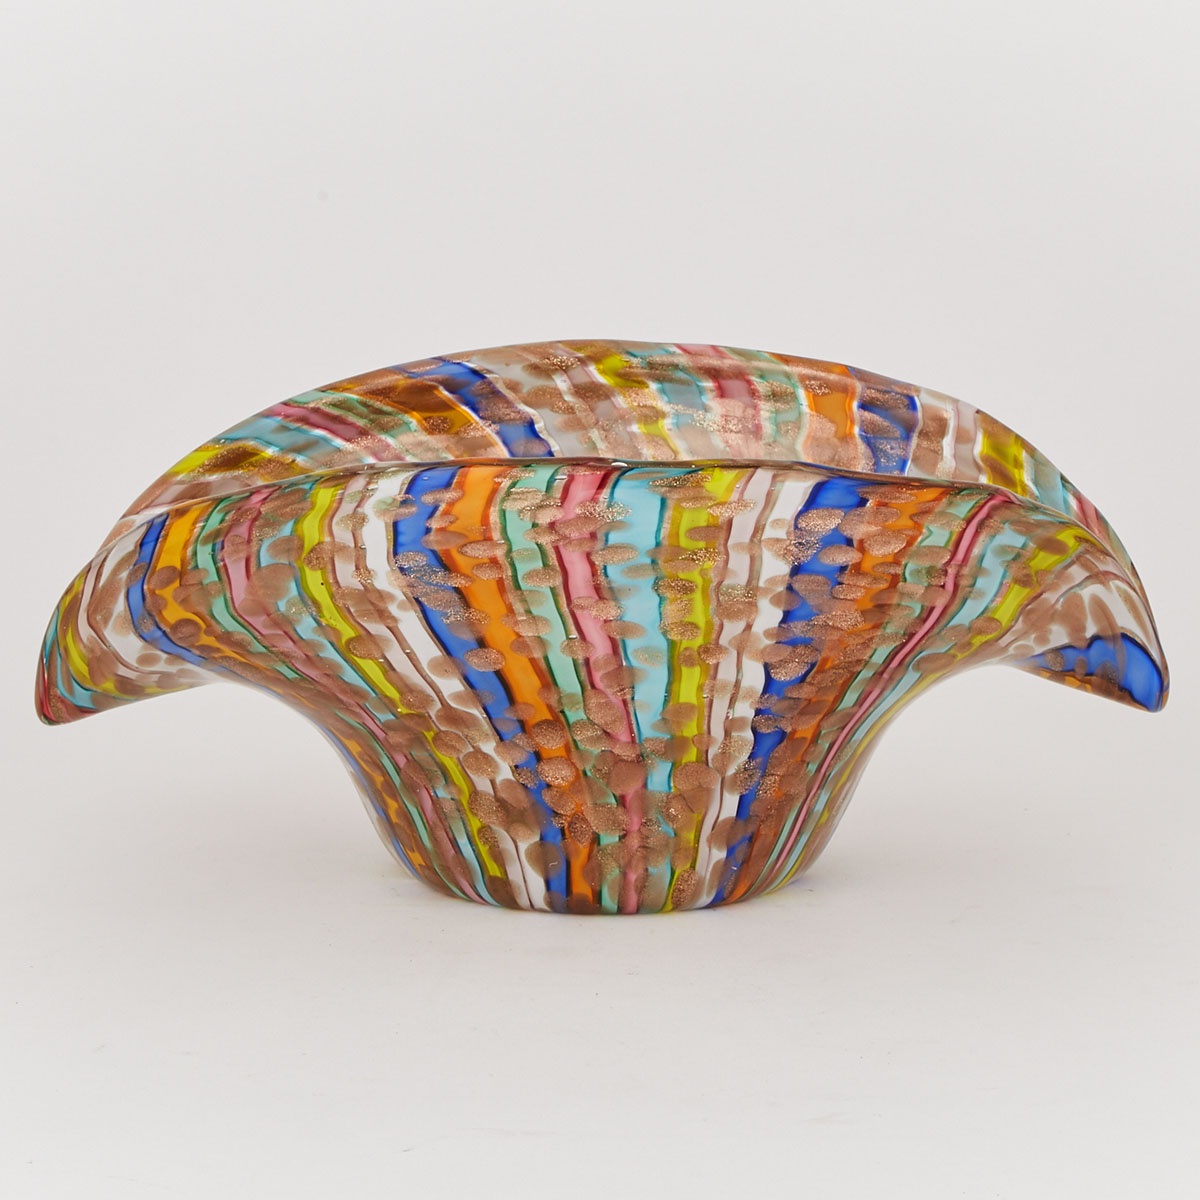 Murano Filigrana Ribbons Glass Bowl, probably AVEM, mid-20th century